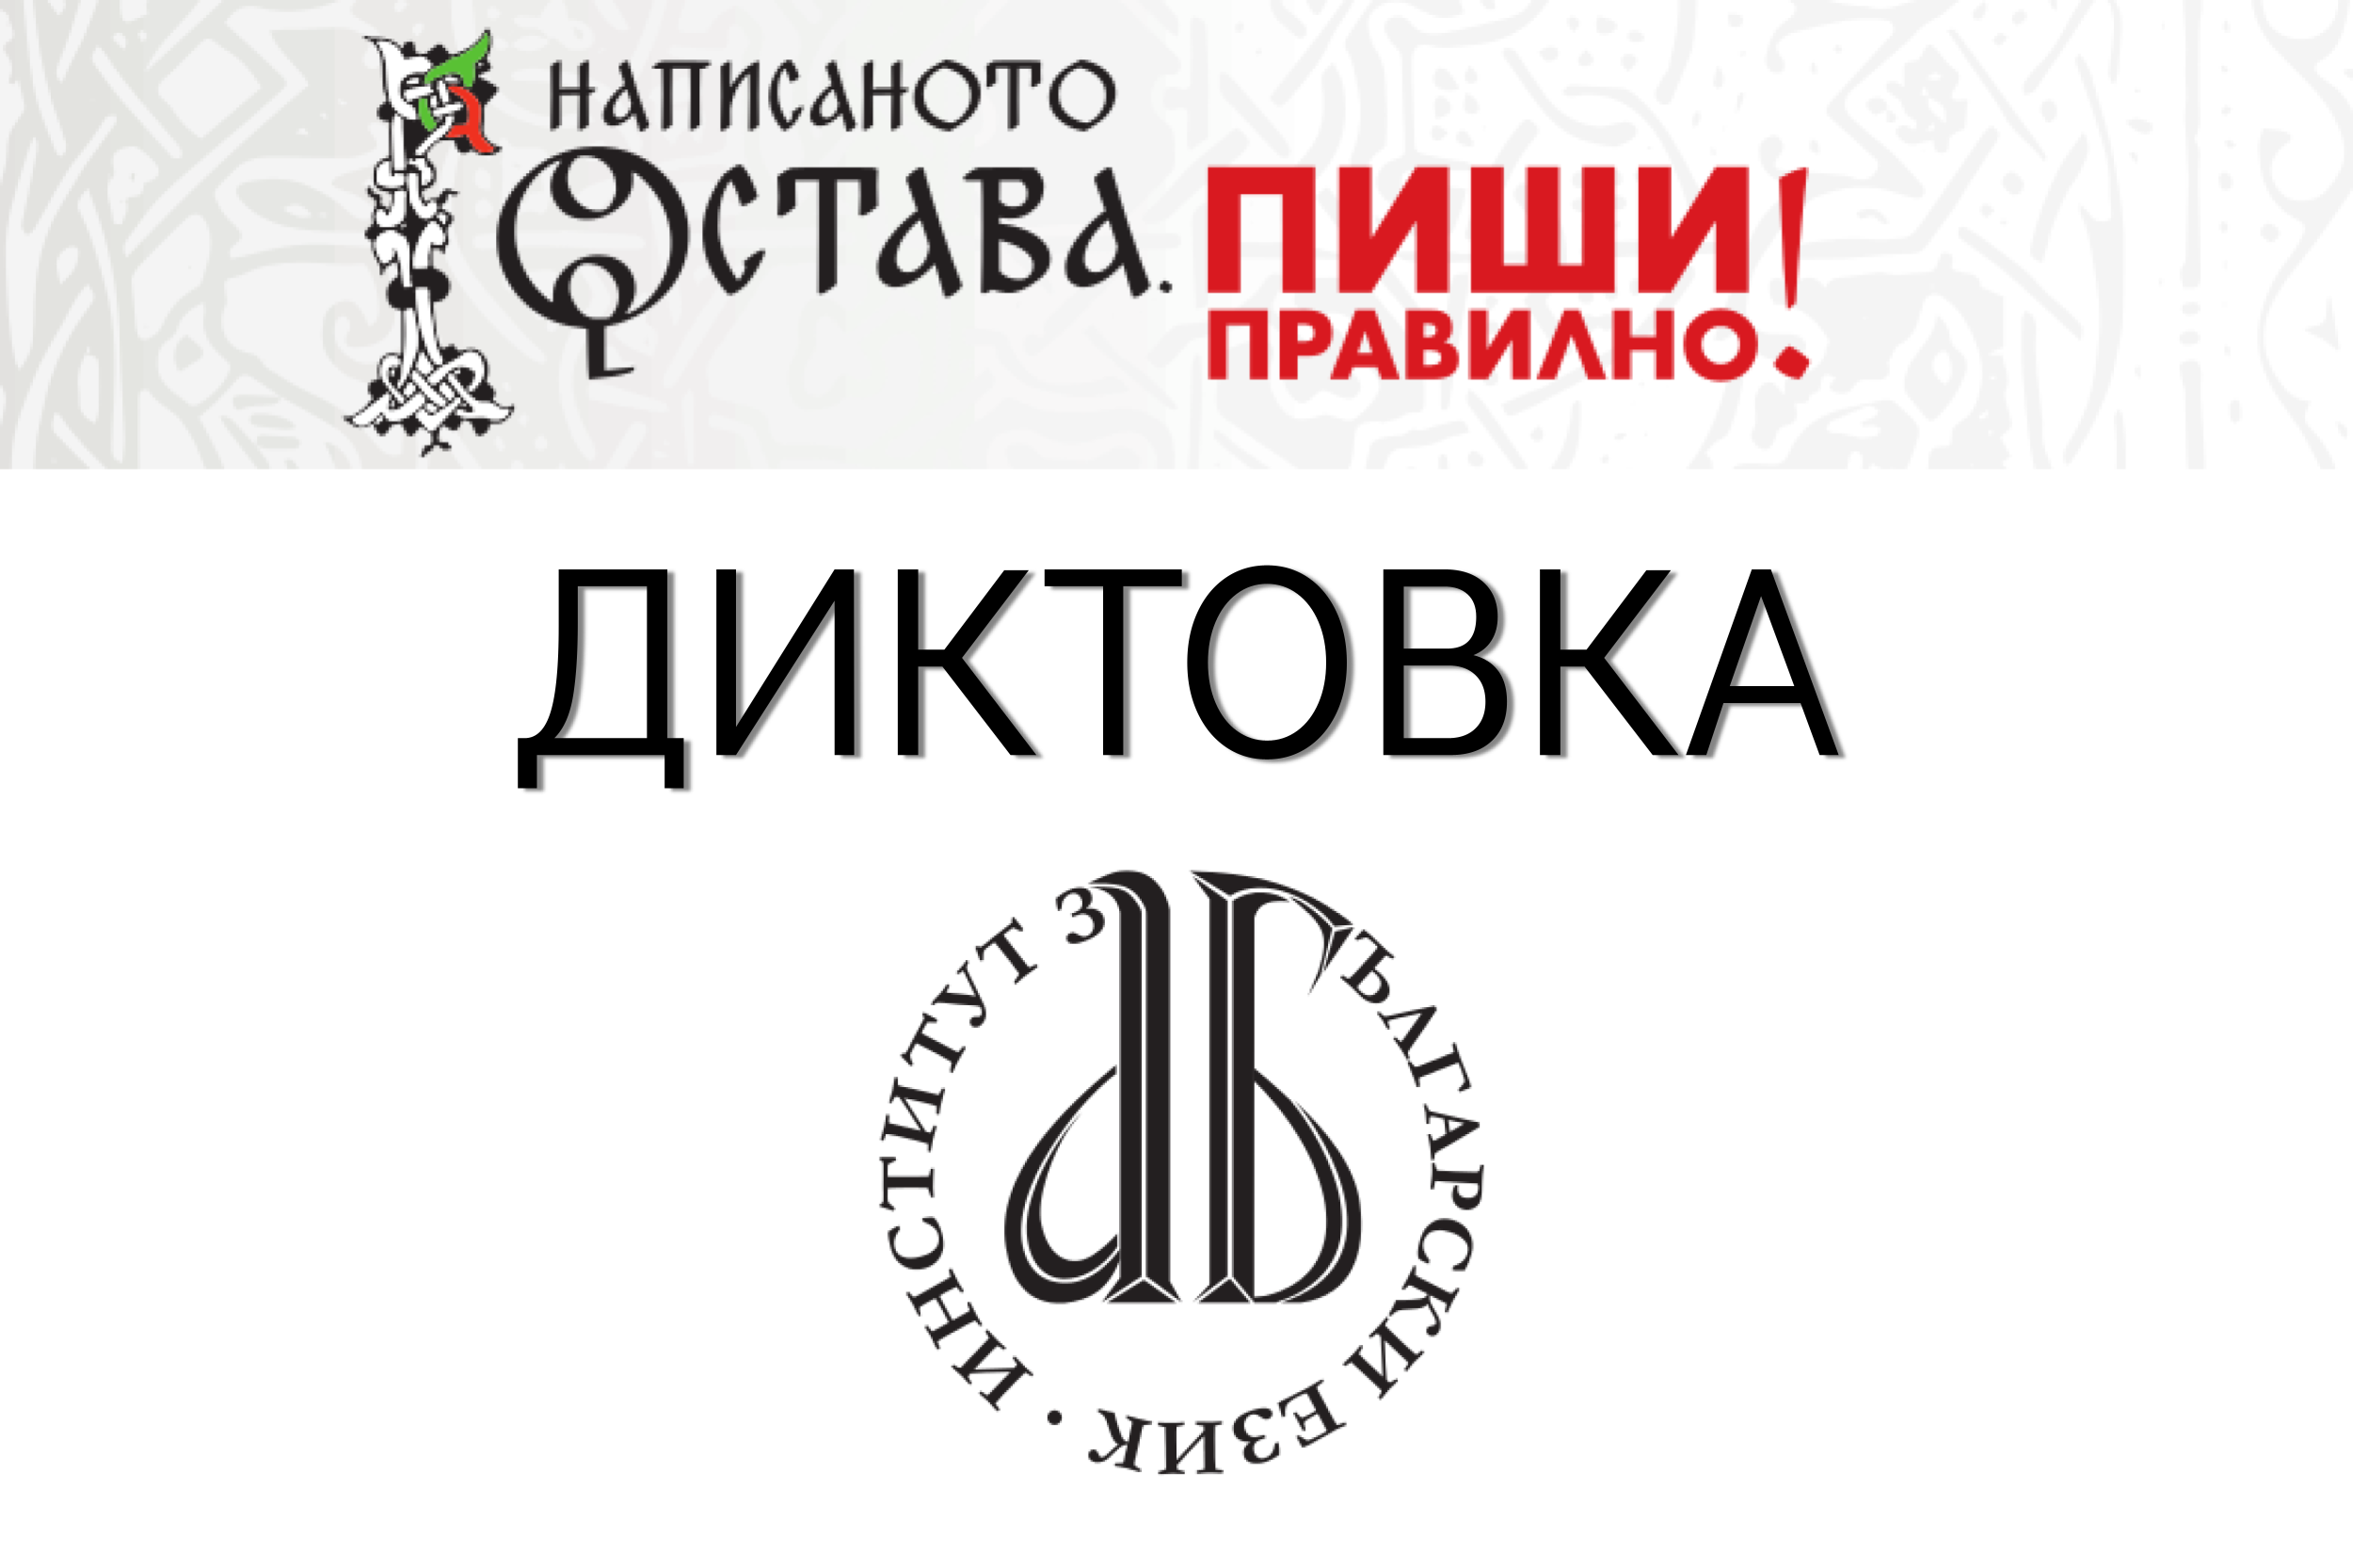 (Български) Конкурс за диктовки – част от кампанията „Написаното остава. Пиши правилно!“ за 24 май 2023 година